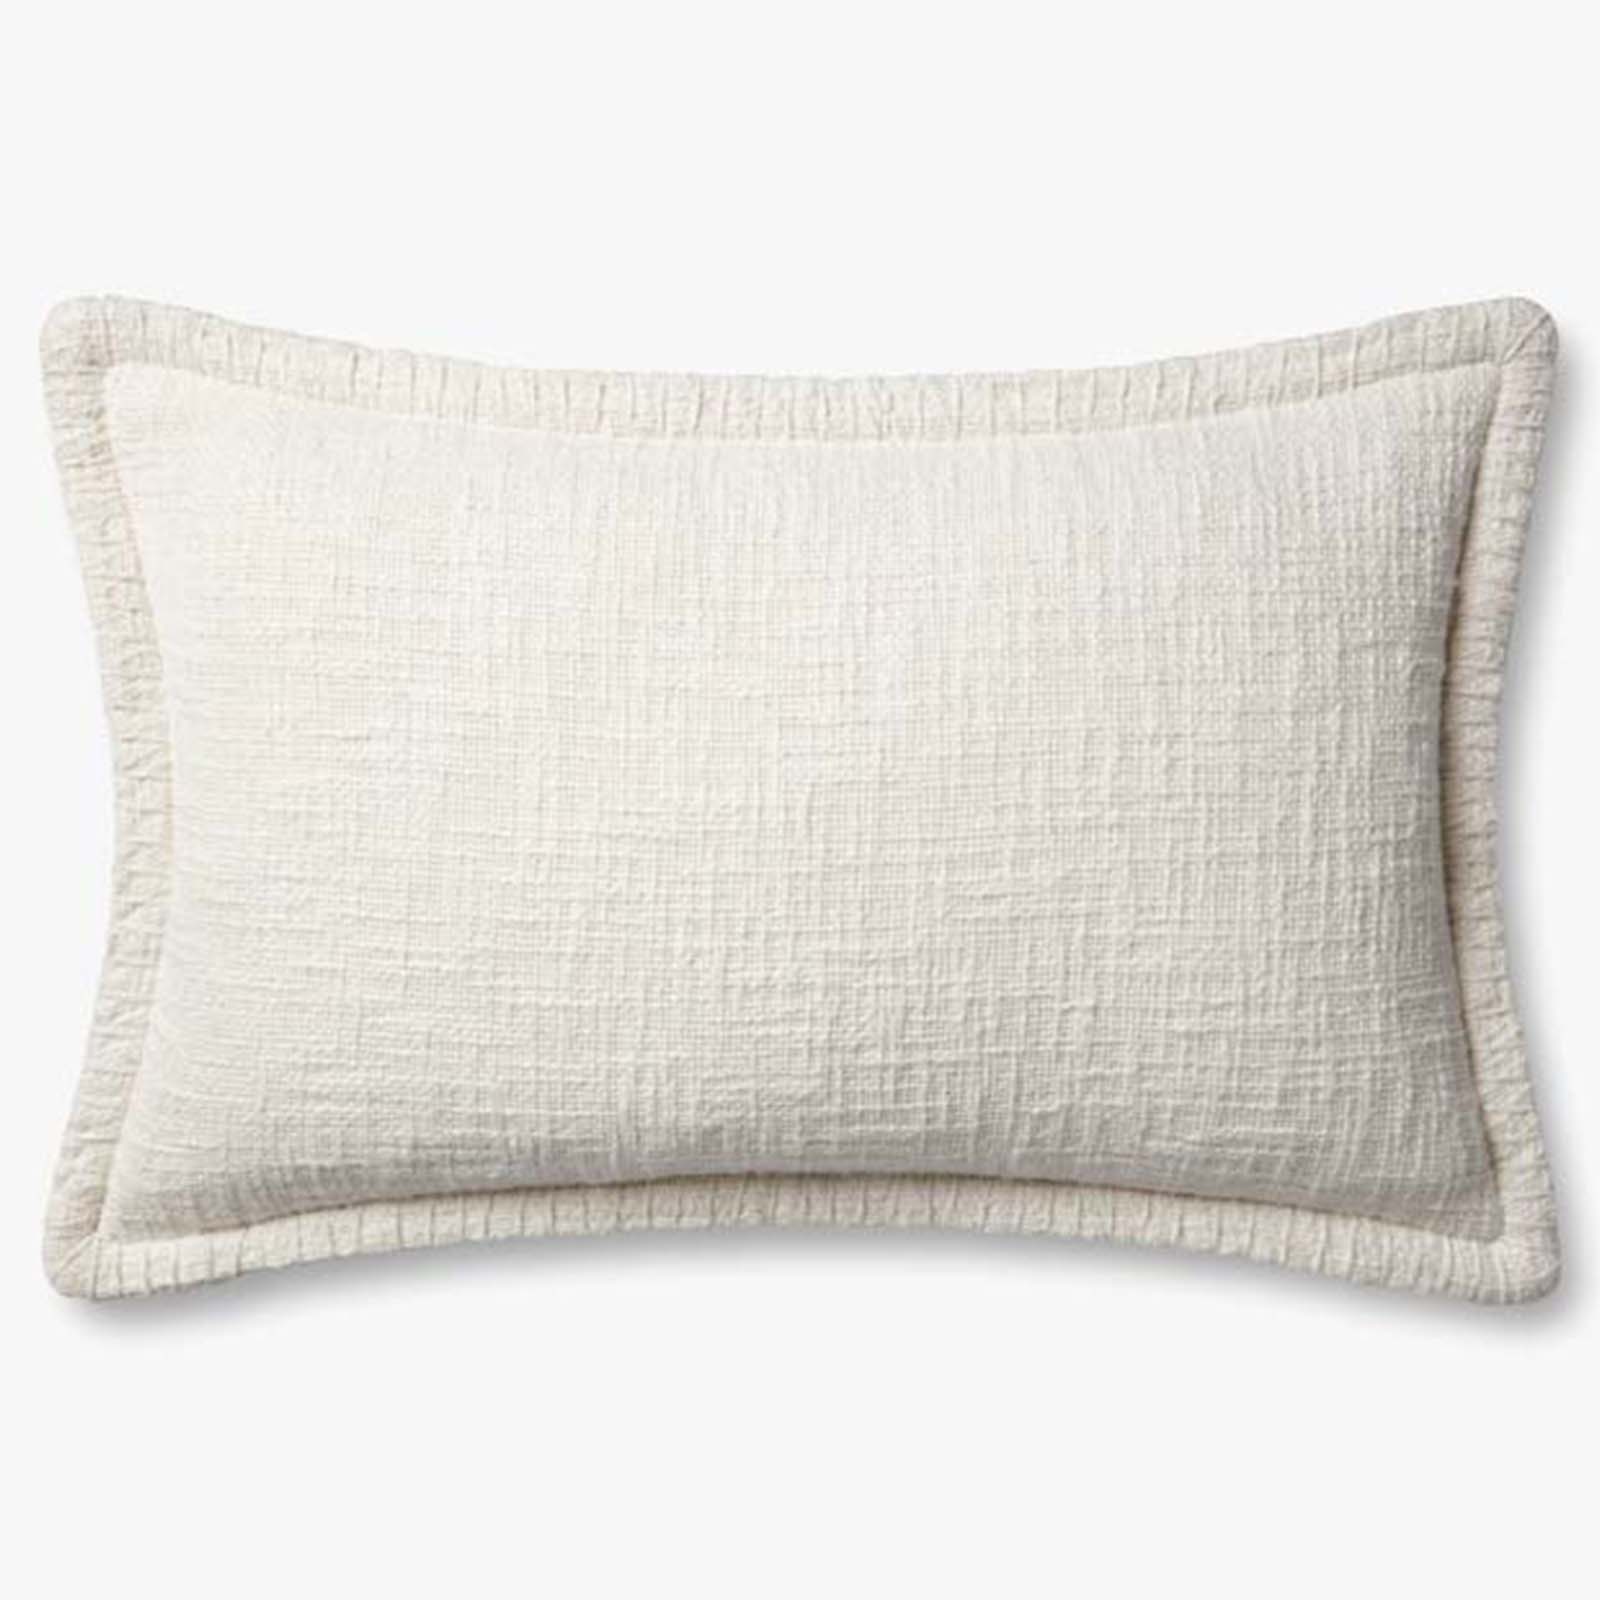 13" x 21" Pillow